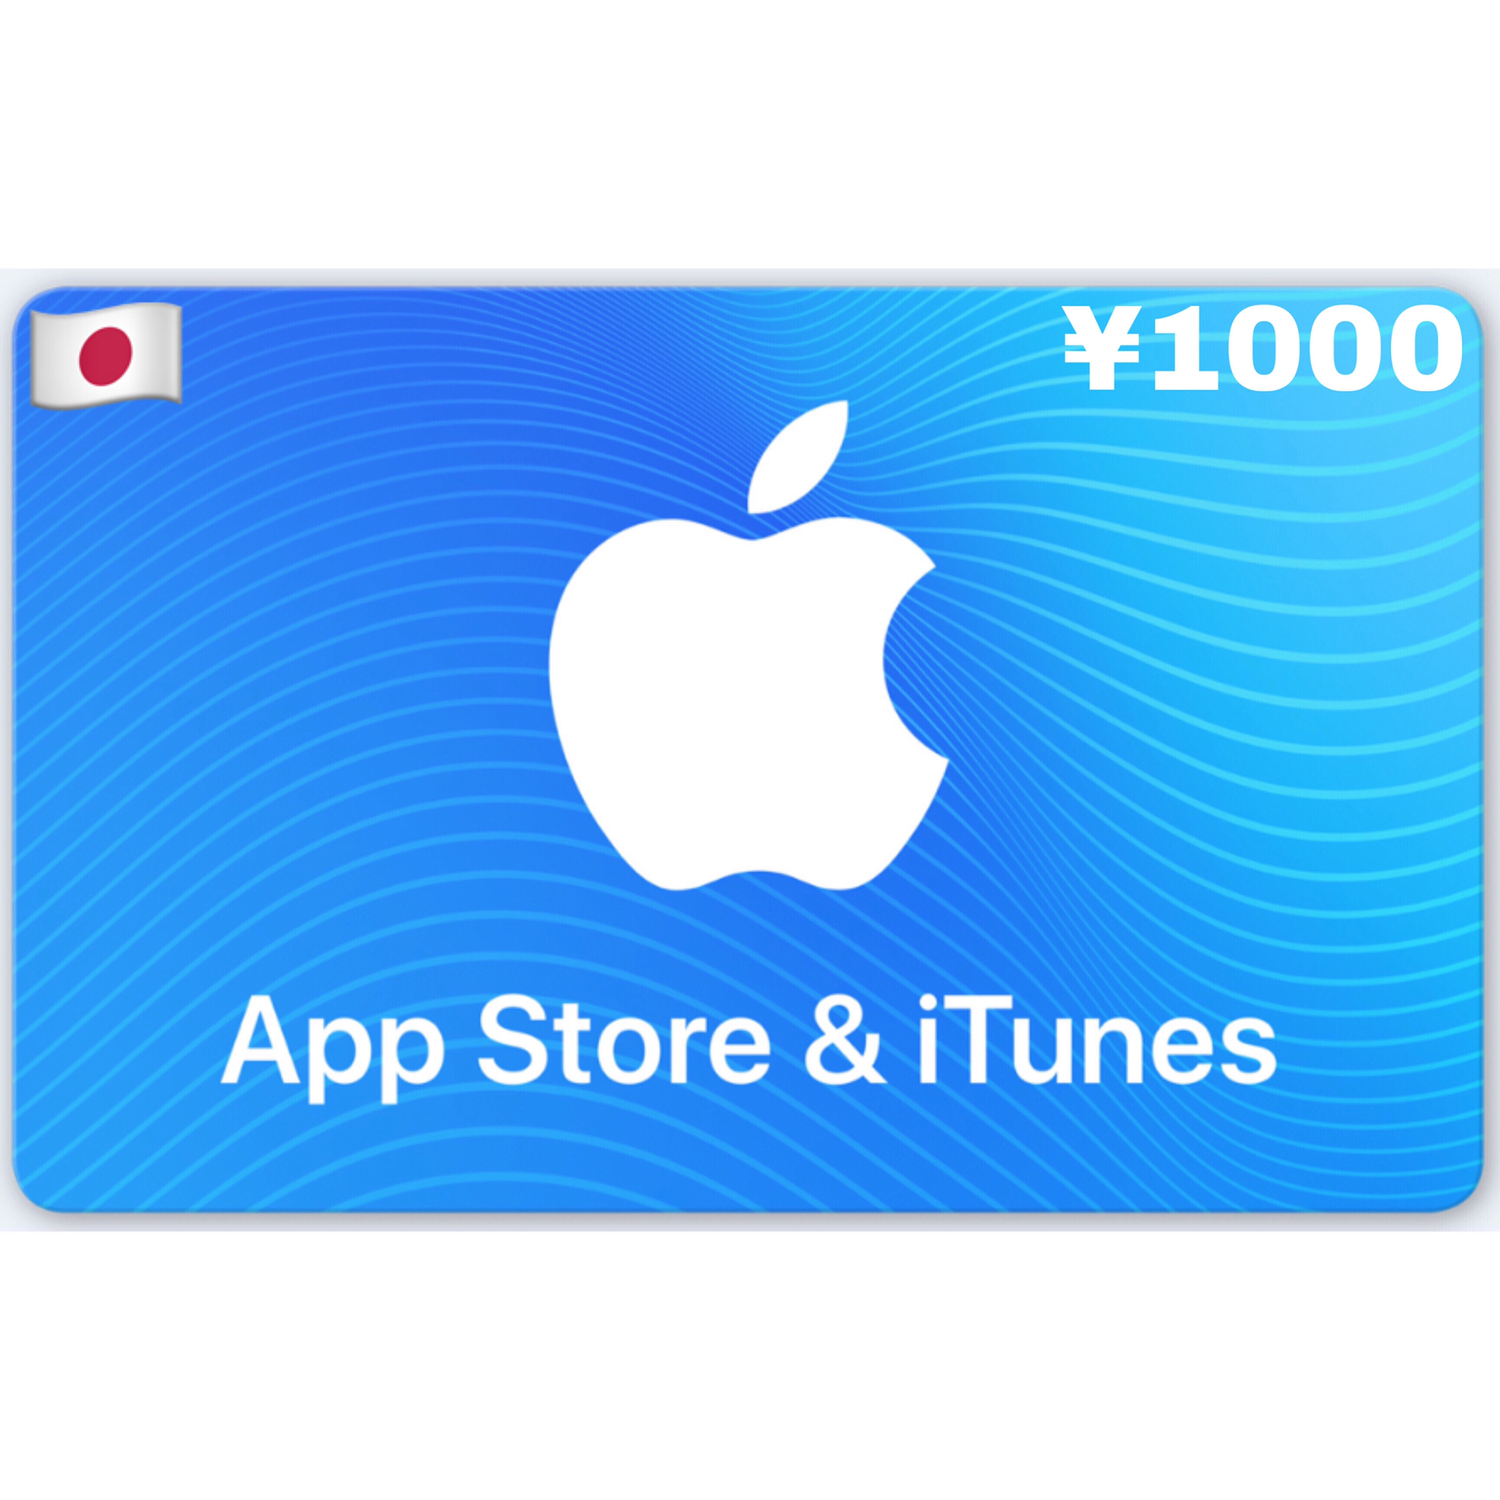 Apple iTunes Gift Card Japan ¥1000 YEN